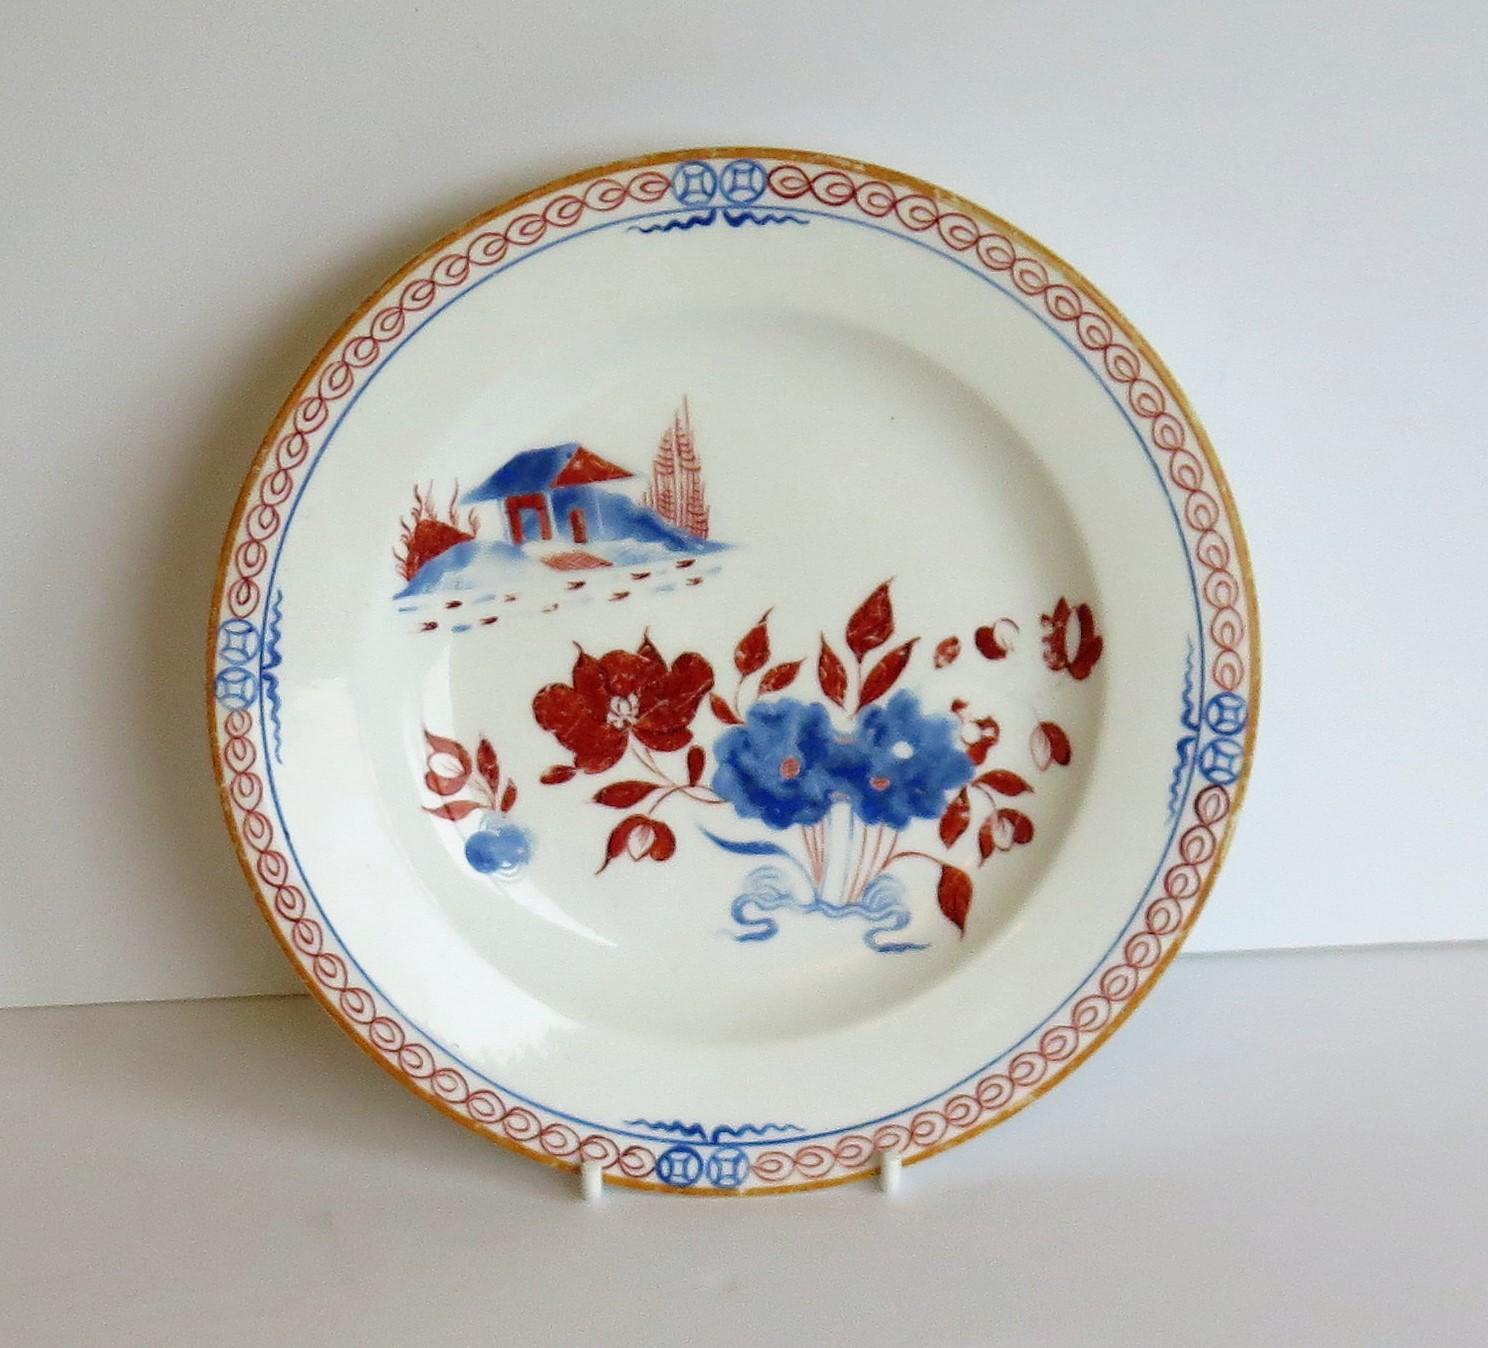 Il s'agit d'une assiette ou d'un plat en porcelaine anglaise Spode peint à la main dans le motif Doll's House, numéro 488, datant de la période George 111, au tout début du XIXe siècle.

L'assiette est bien empotée et repose sur un pied bas. Il est